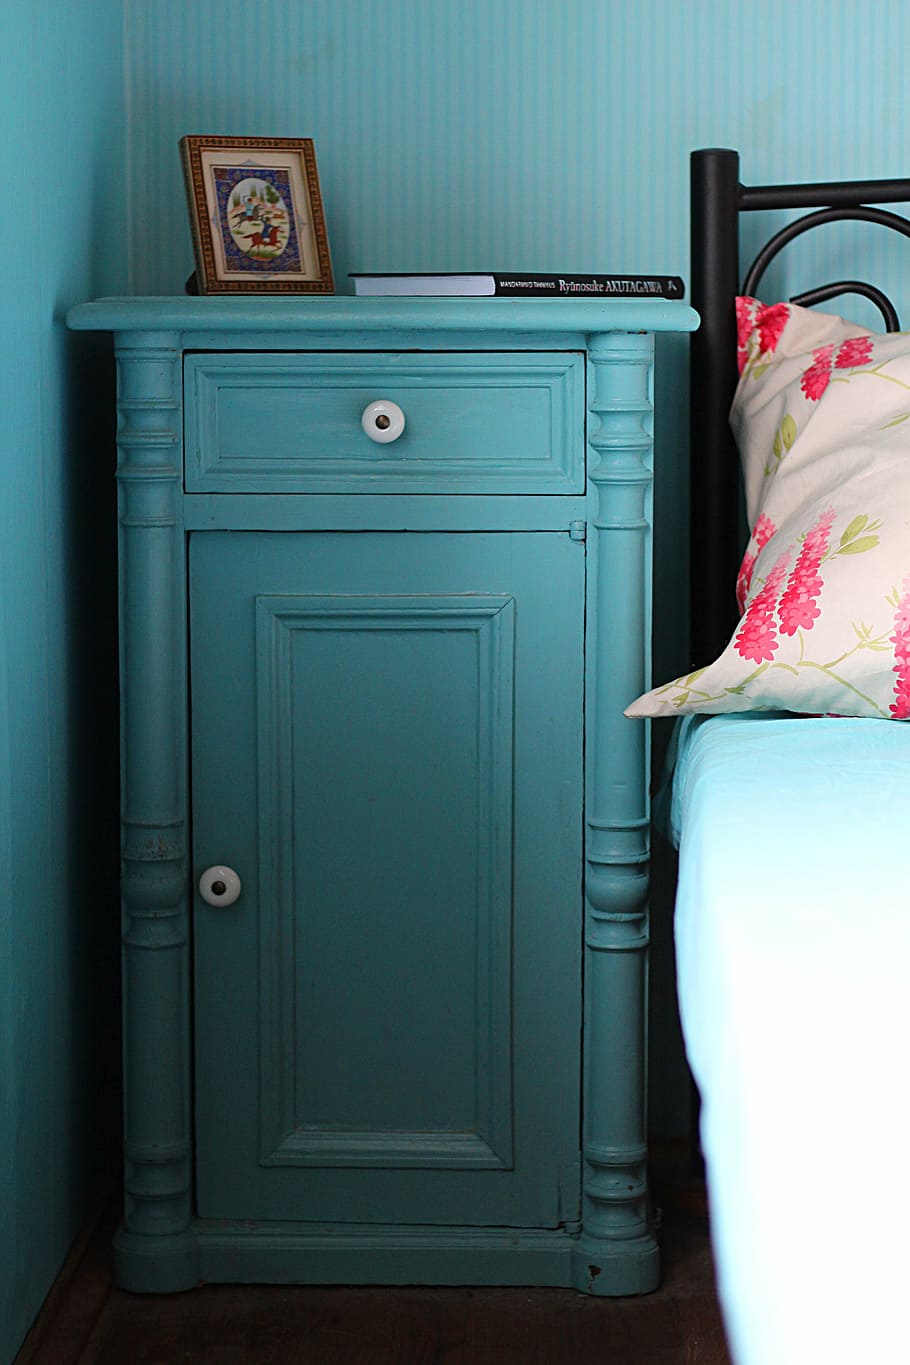 azul, madera, gabinete, al lado, negro, cama, mesita de noche, dormitorio, en el interior, una persona